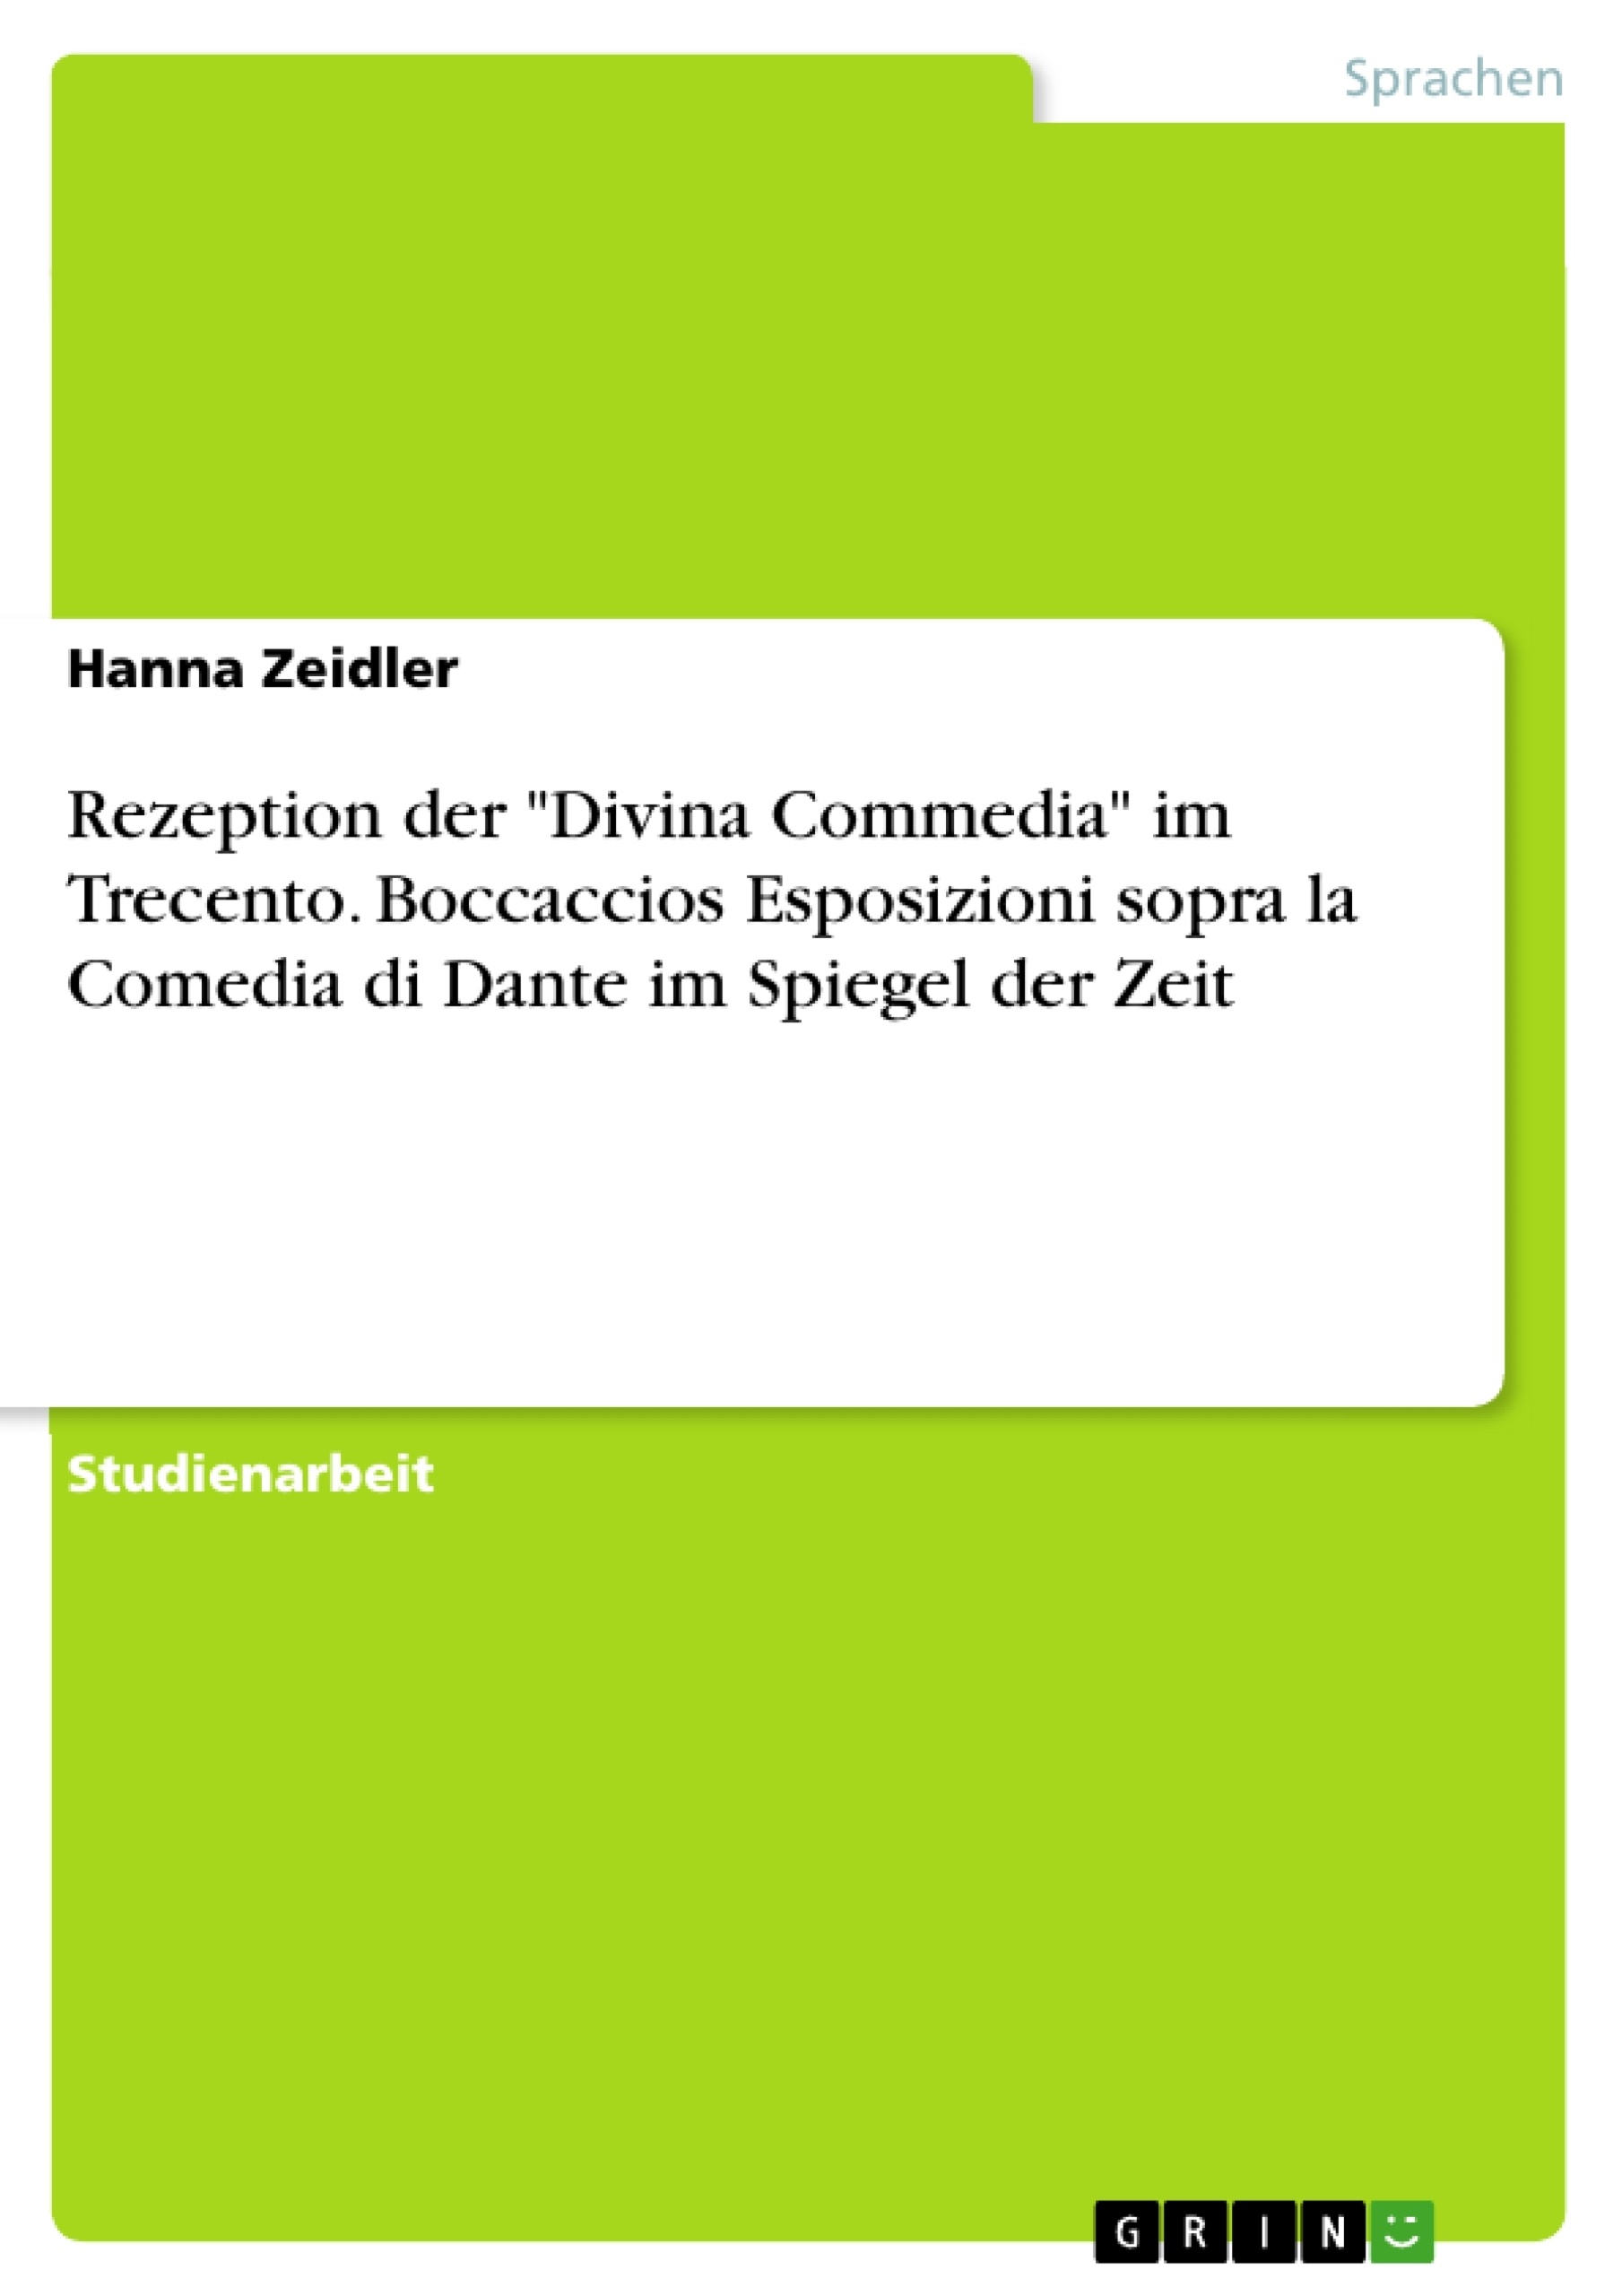 Titel: Rezeption der "Divina Commedia" im Trecento. Boccaccios Esposizioni sopra la Comedia di Dante im Spiegel der Zeit